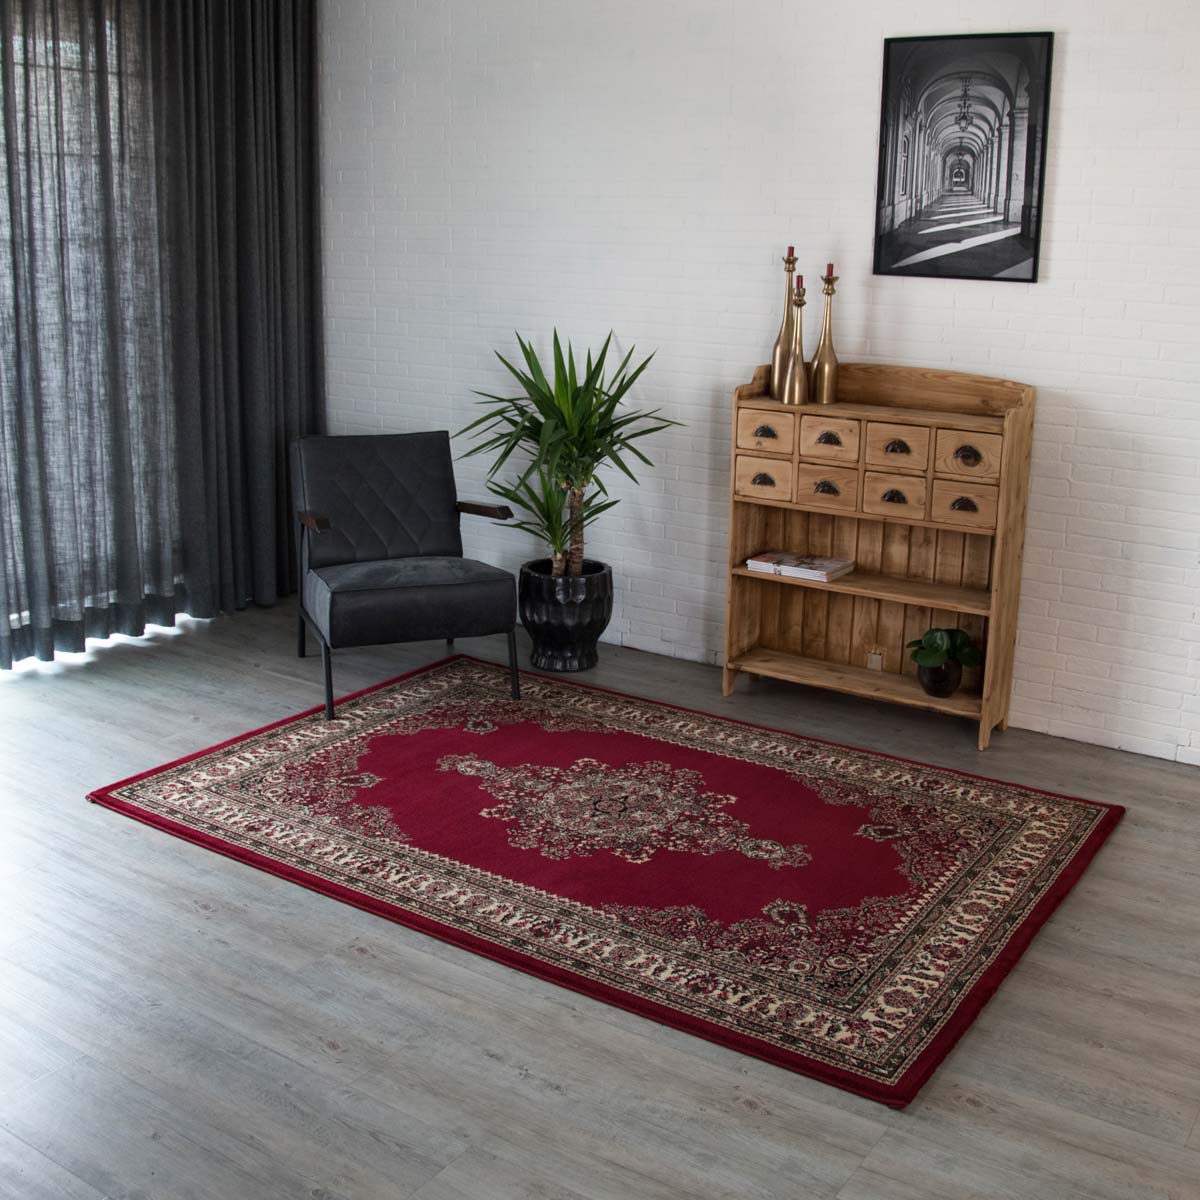 opraken Gaan havik Design perzisch tapijt Royalty | Tapeso